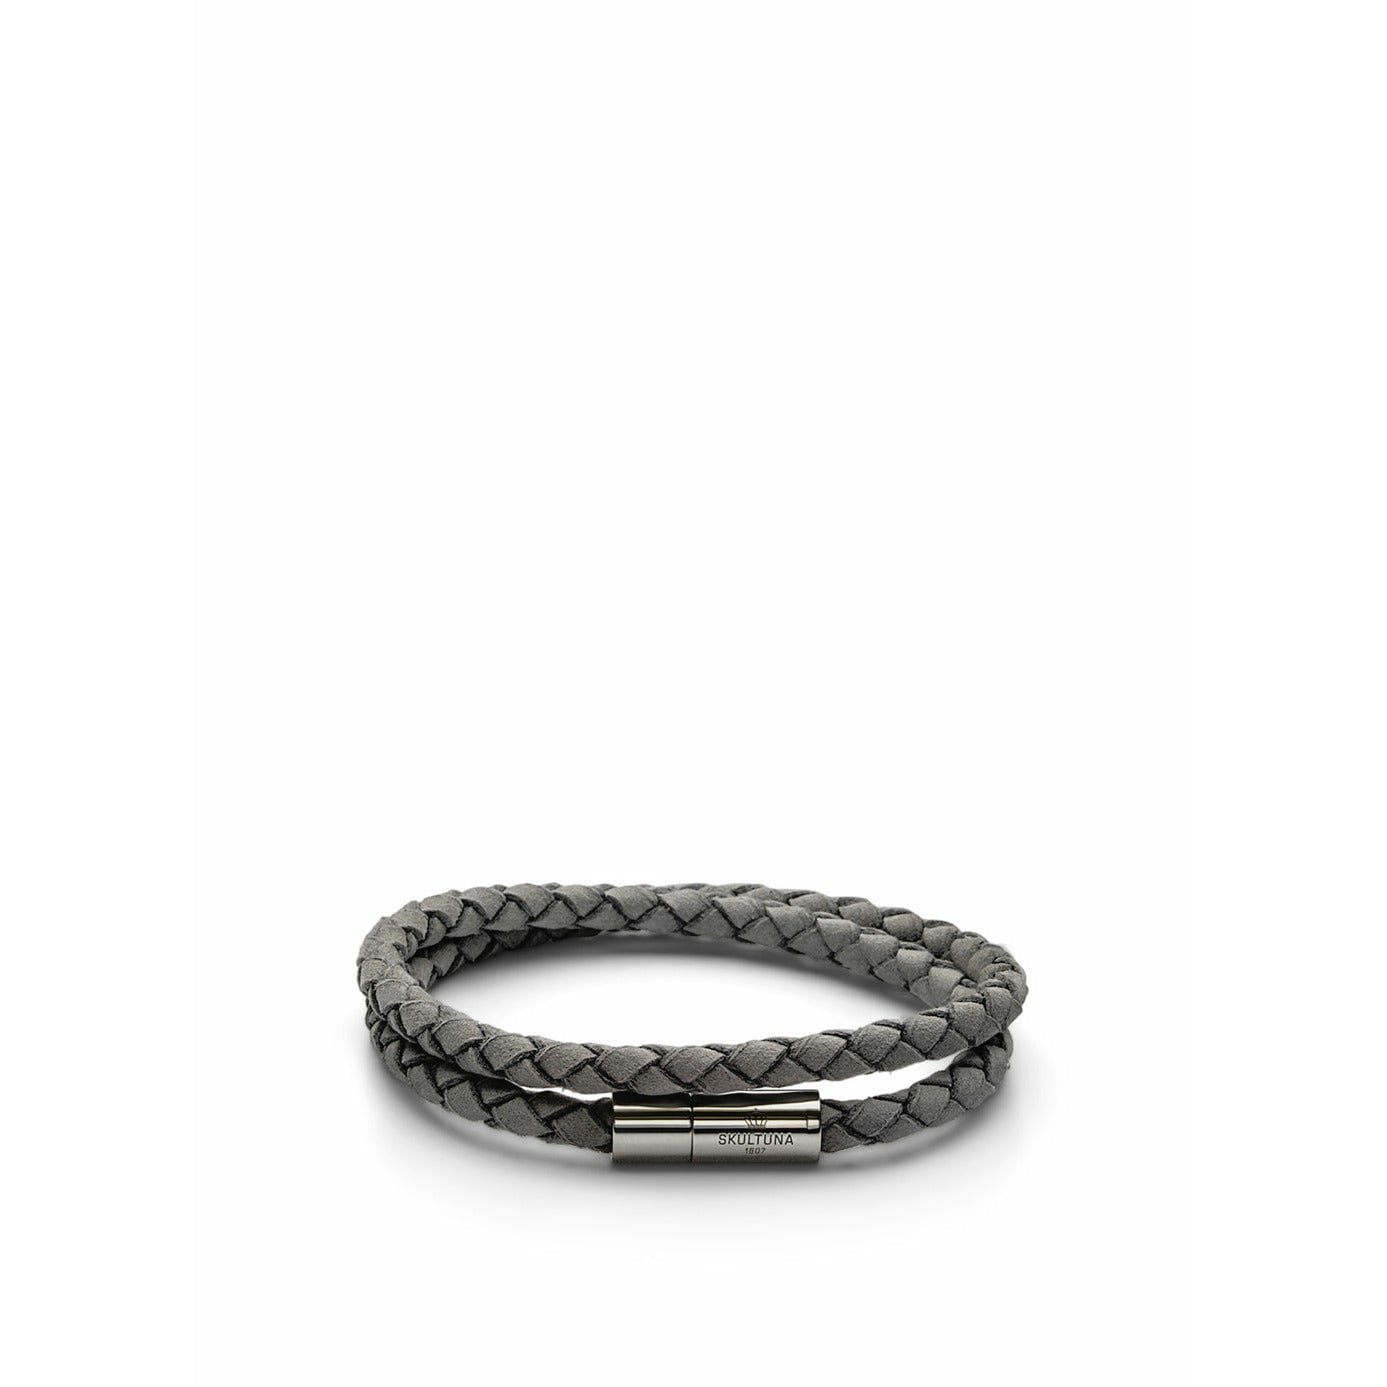 Skultuna De suede armband groot Ø18,5 cm, grijs